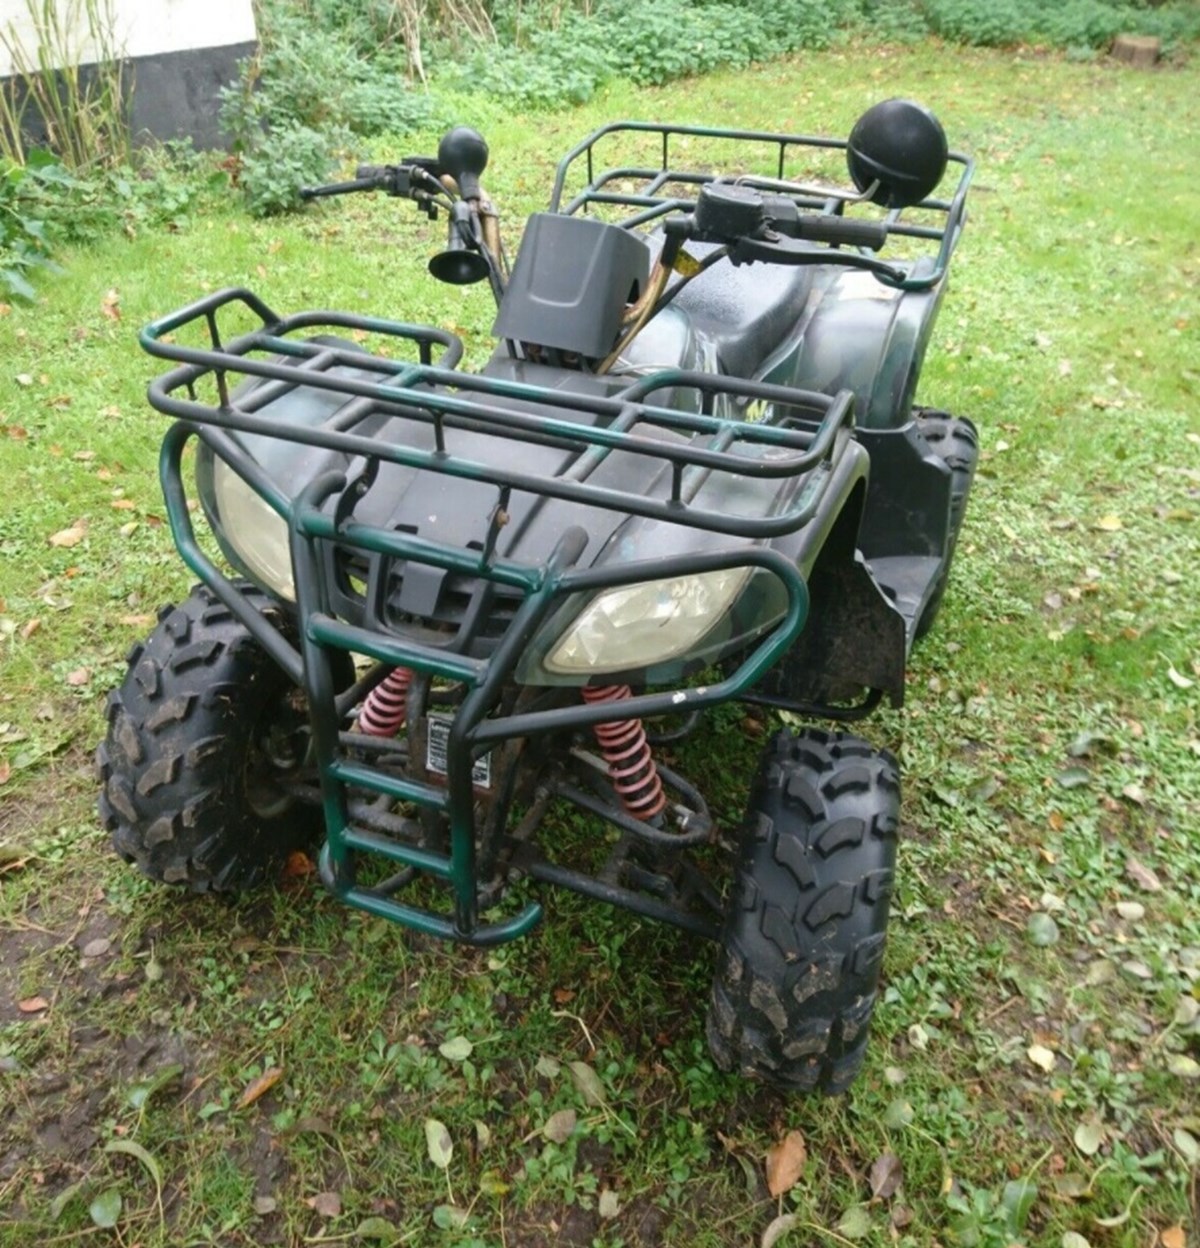 3.300 har Søren sat denne ATV til salg for på DBA. ATV’en er af mærket Gepard, og den kan hentes hos Søren, der bor i Gedsted